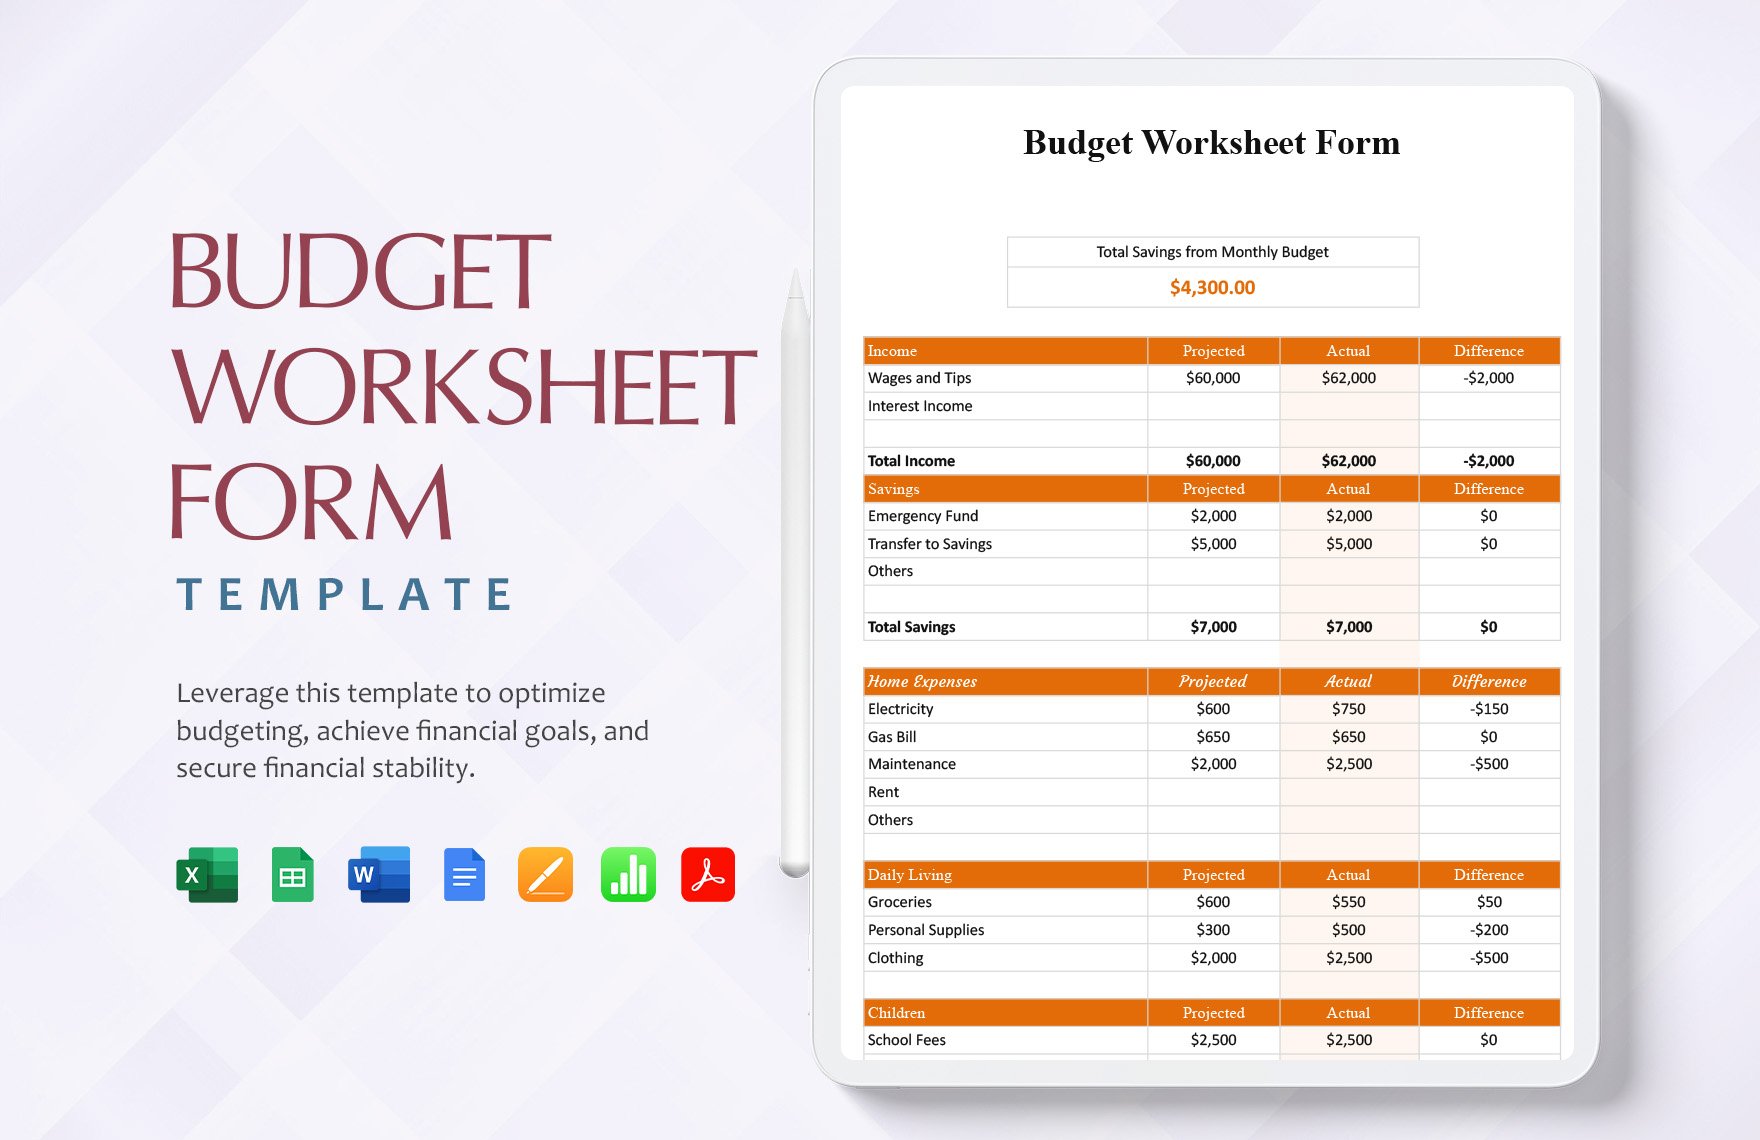 Budget Worksheet Form Template